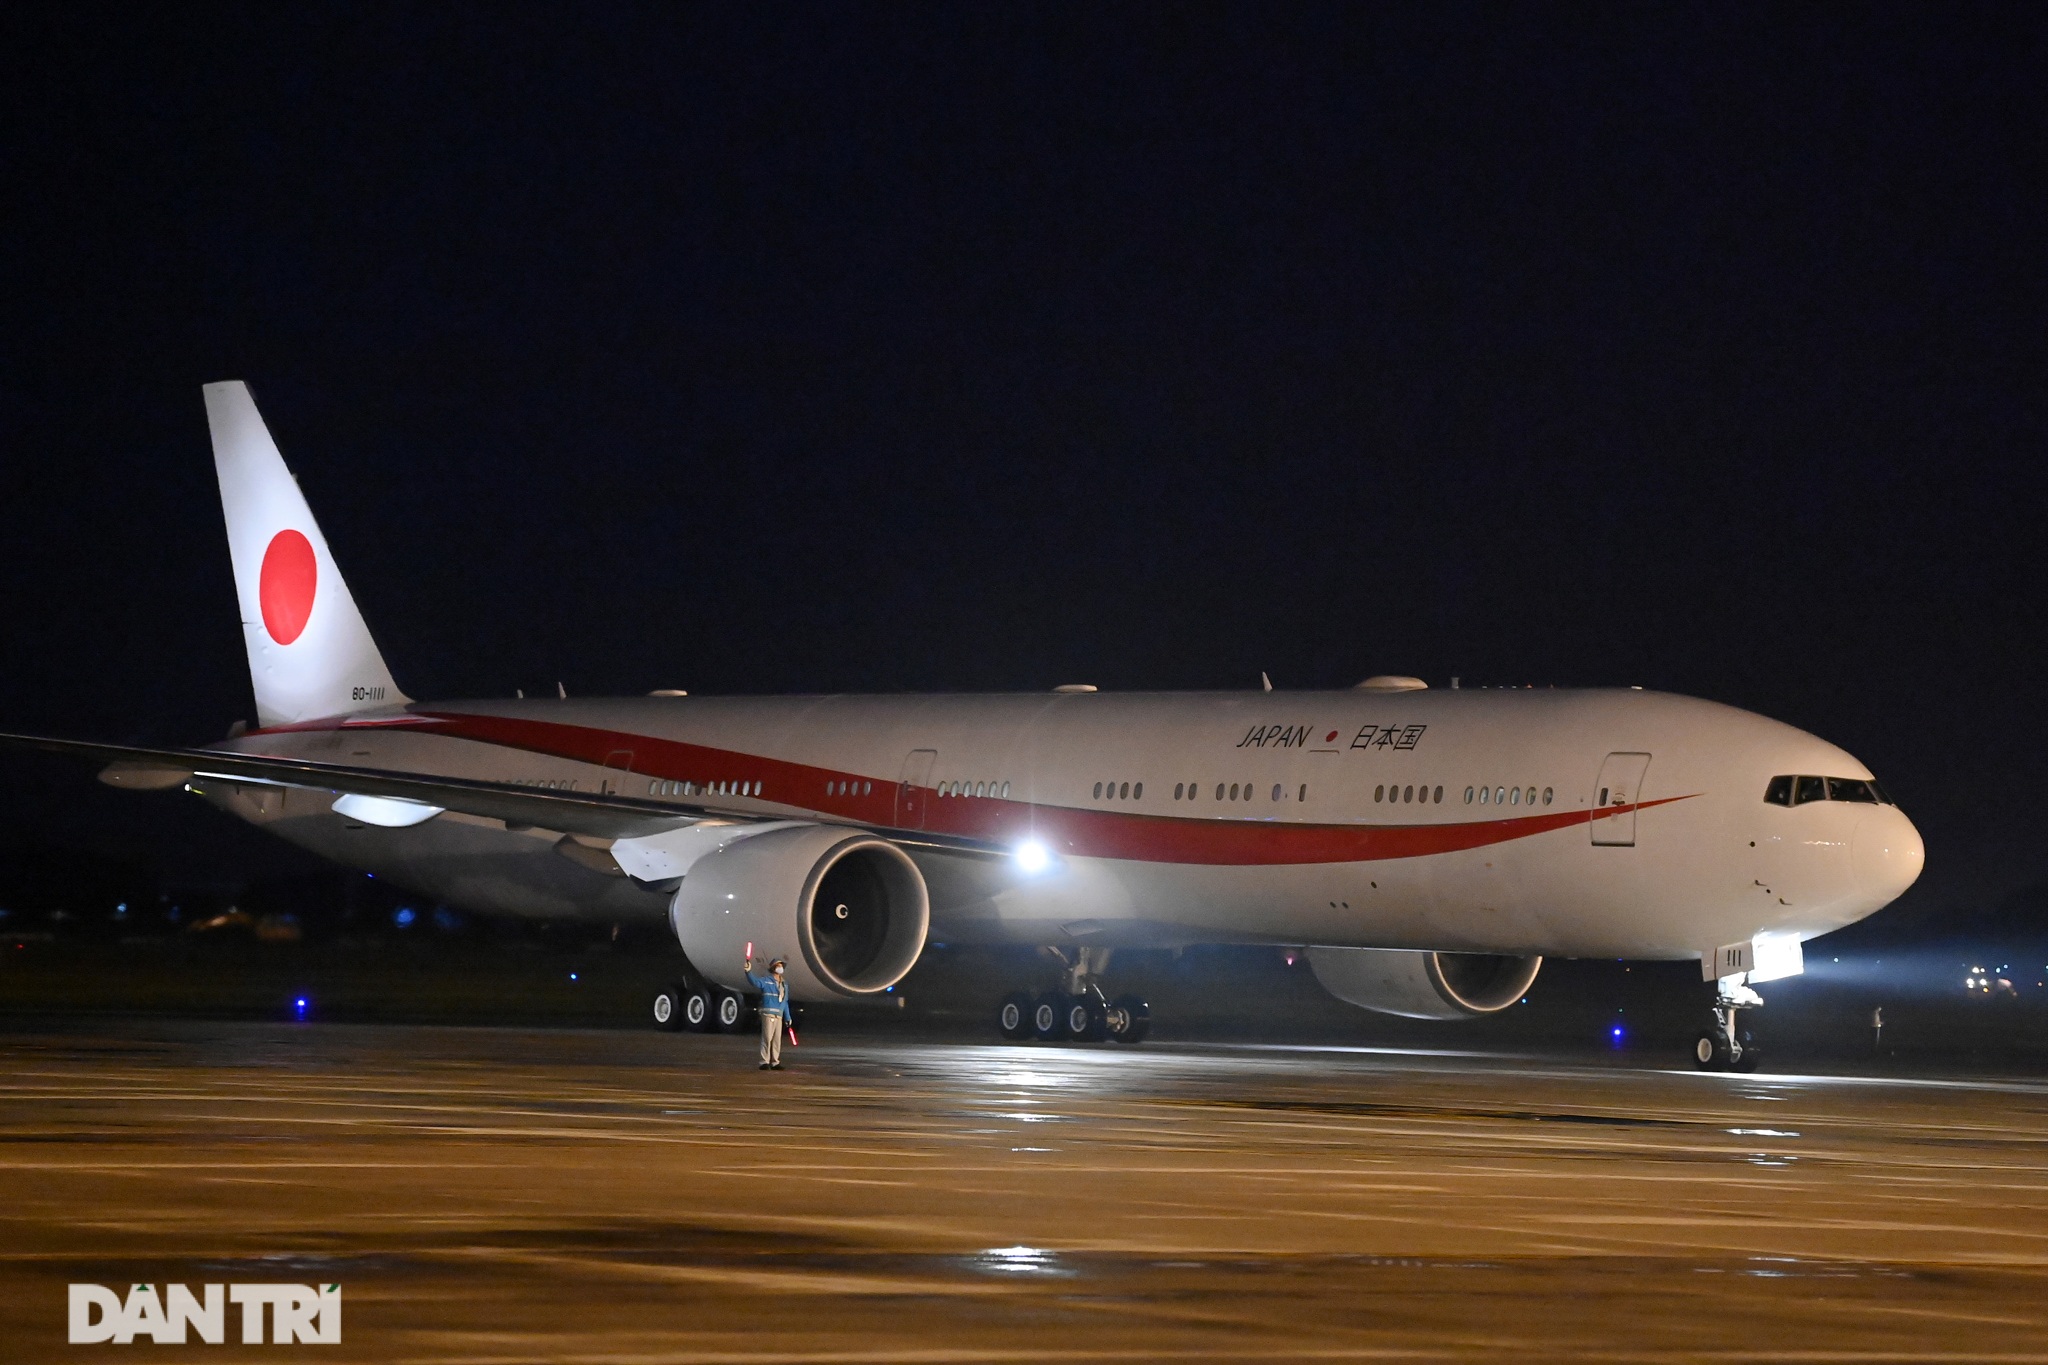 Chuyên cơ của Thủ tướng Nhật Bản hạ cánh xuống sân bay Nội Bài - 1